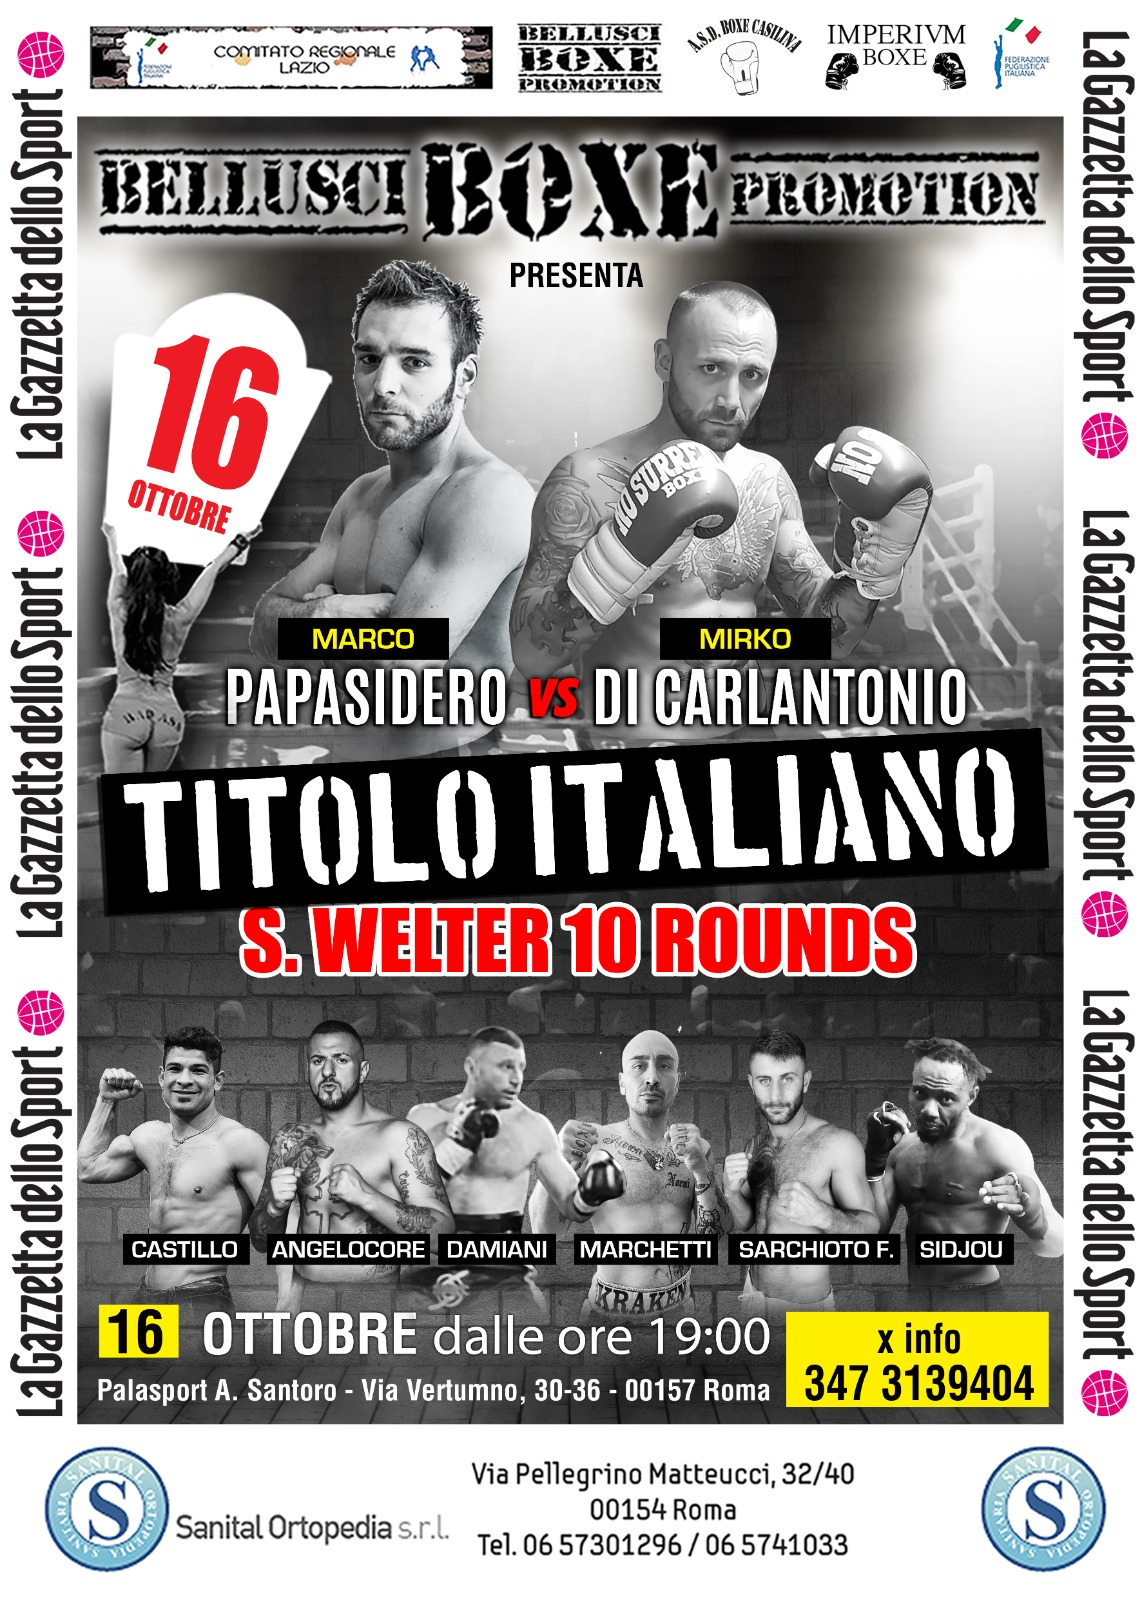 Il 16 ottobre a Roma Papasidero vs Di Carlantonio per il Titolo Italiano Superwelter - Diretta Gazzetta.it - Youtube FPIOfficialChannel 